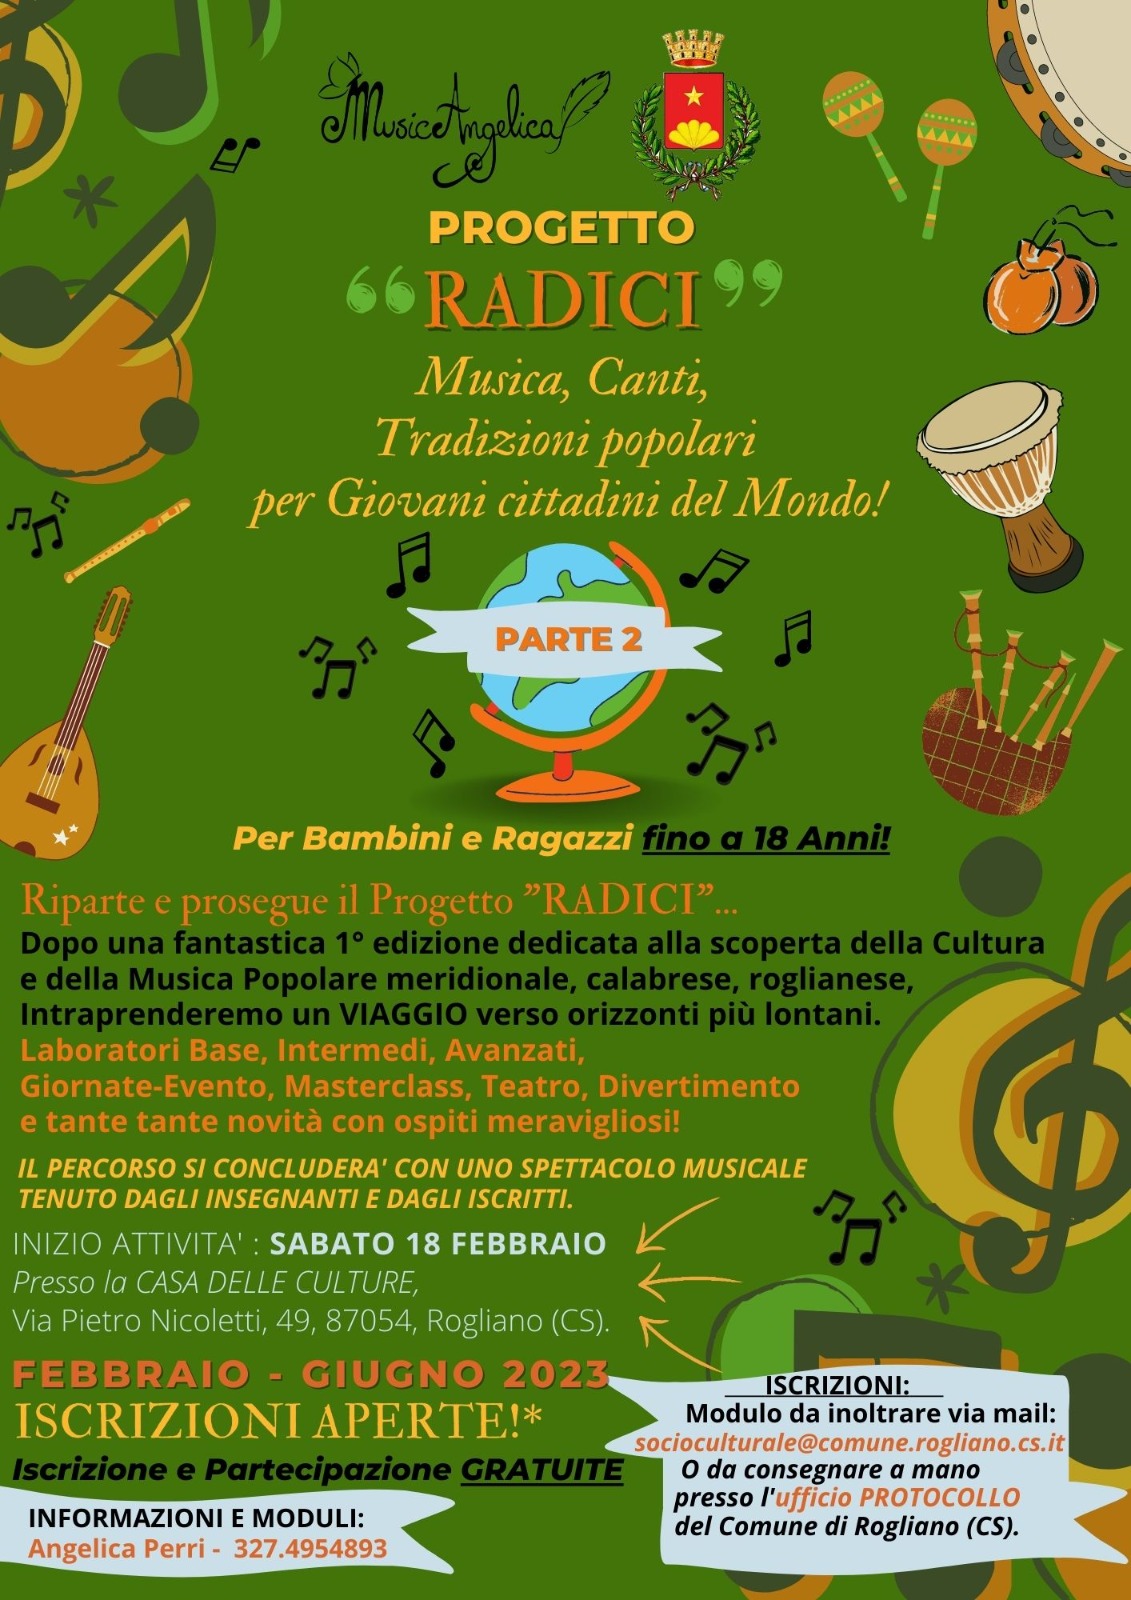 Progetto Radici: Musica, Canti, Tradizioni popolari per Giovani cittadini del Mondo!